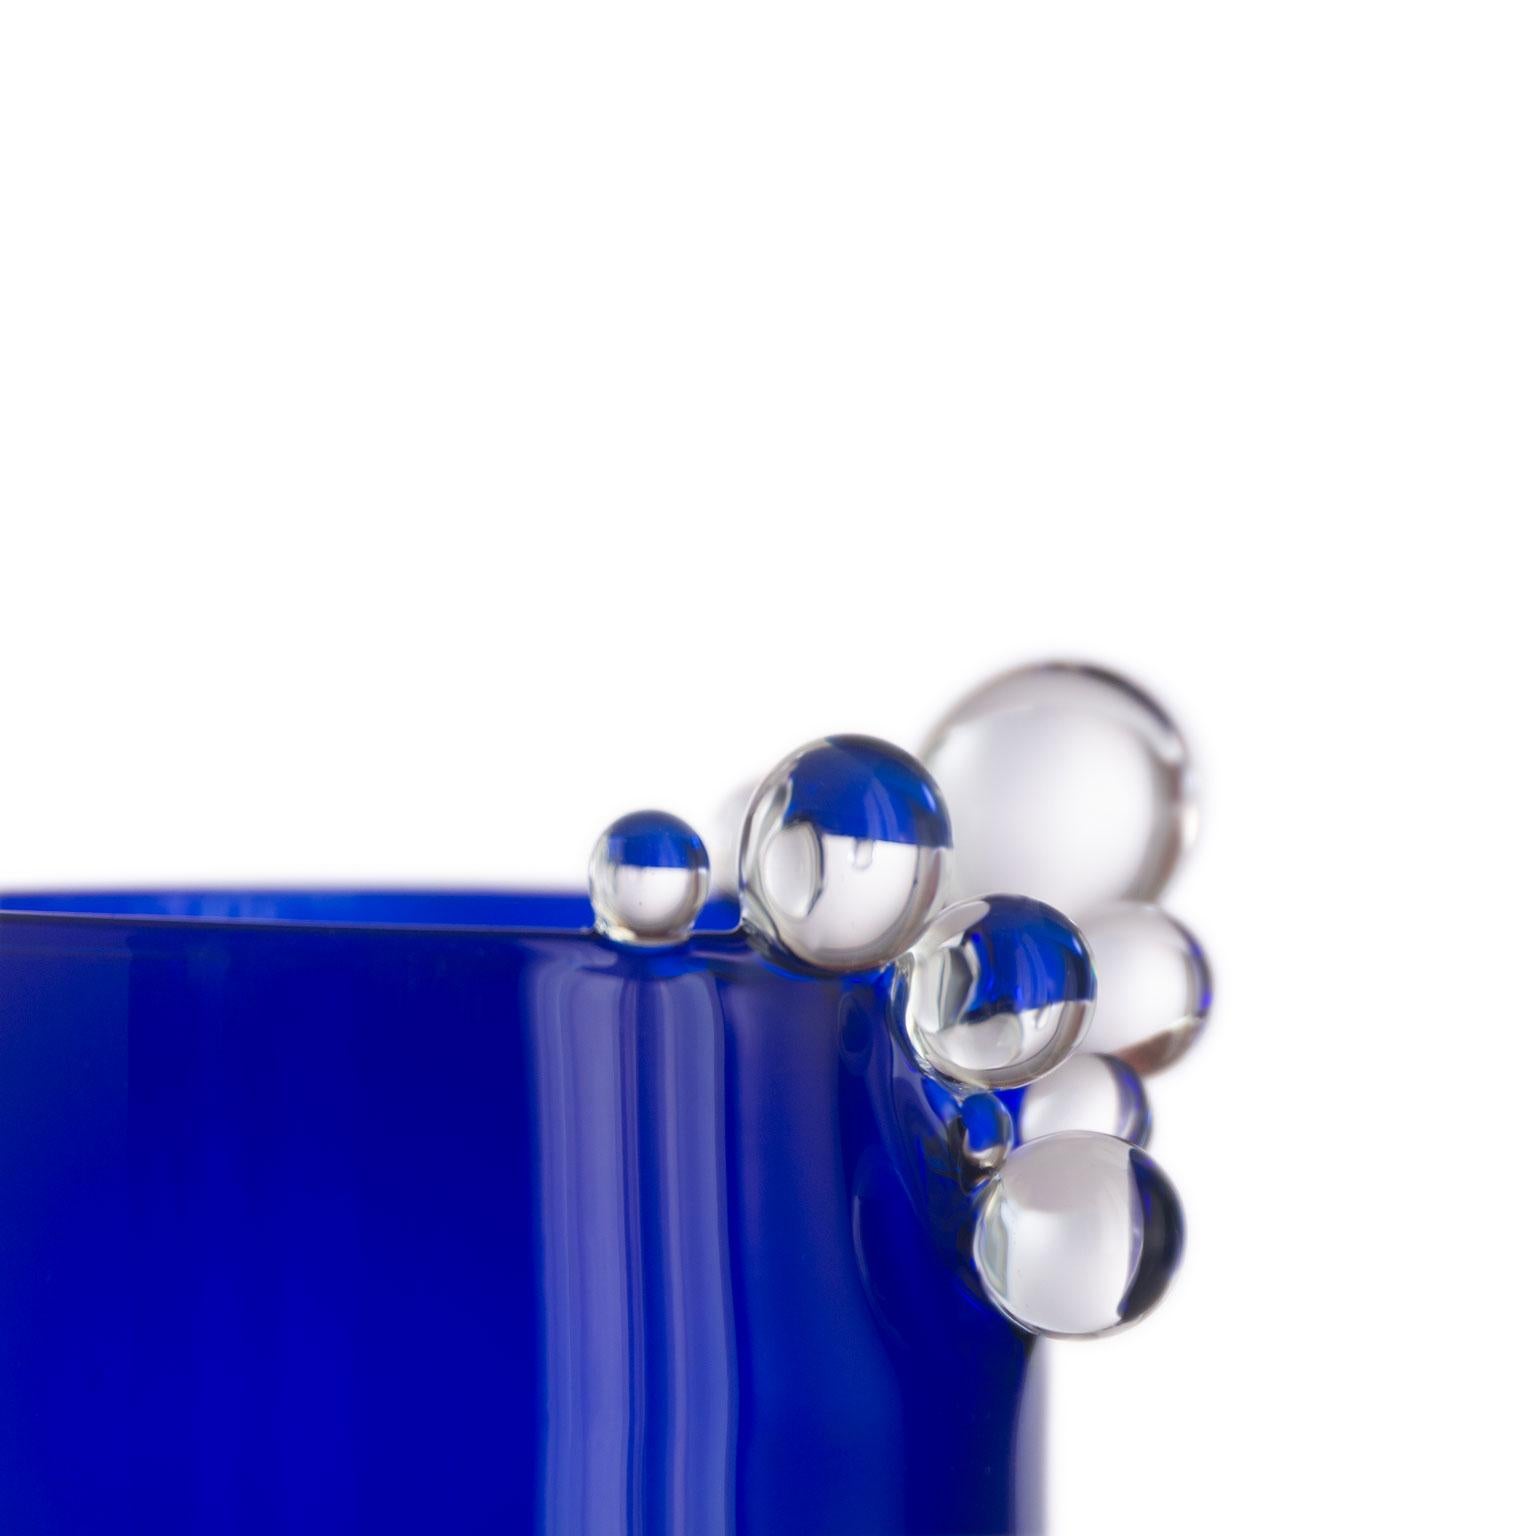 Vase en verre soufflé Bubble Kintsugi #Deep Blue 2023 par Simone Crestani

Bubble Kintsugi #Deep Blue

Artiste : Simone Crestani
MATERIAL : Verre borosilicate
Technique : Flameworking
Pièce unique
Année : 2023
Mesures : Hauteur 6.69'', largeur